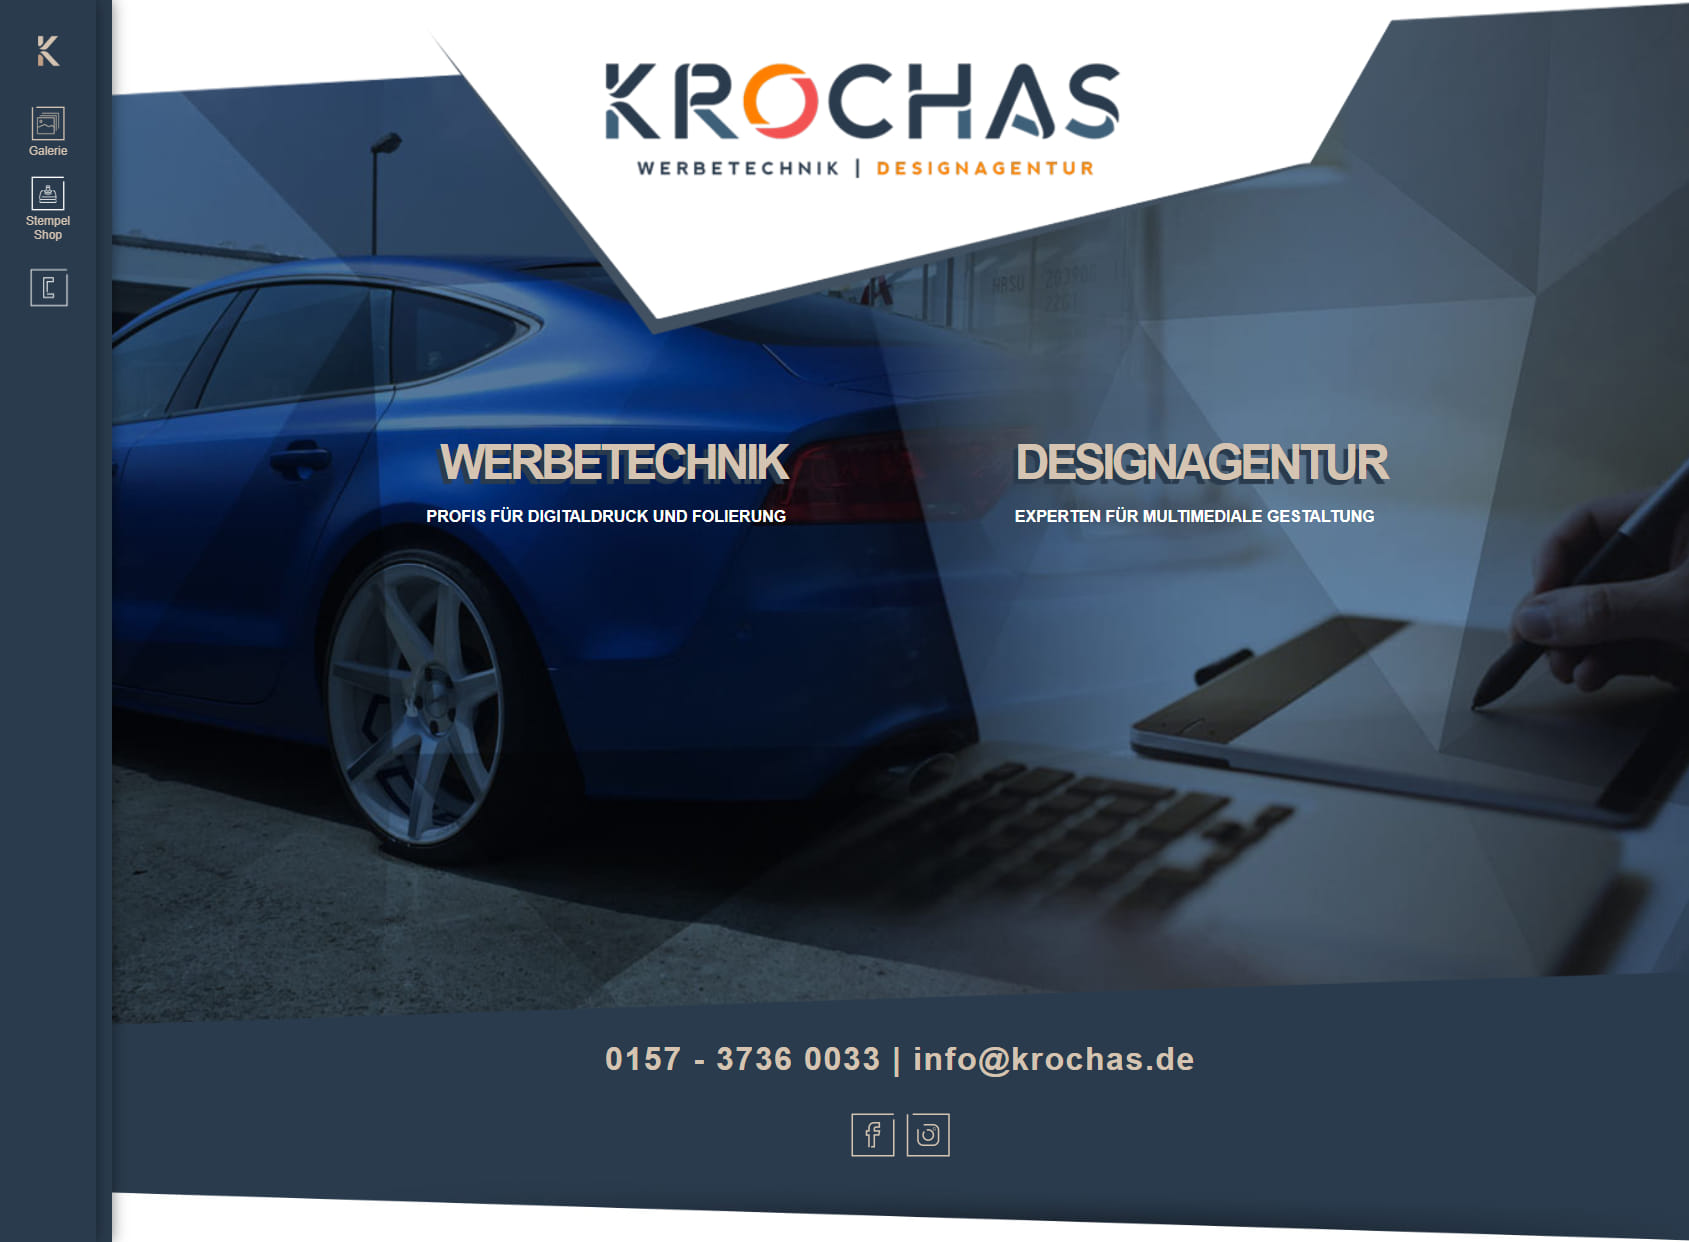 KROCHAS Werbetechnik I Designagentur